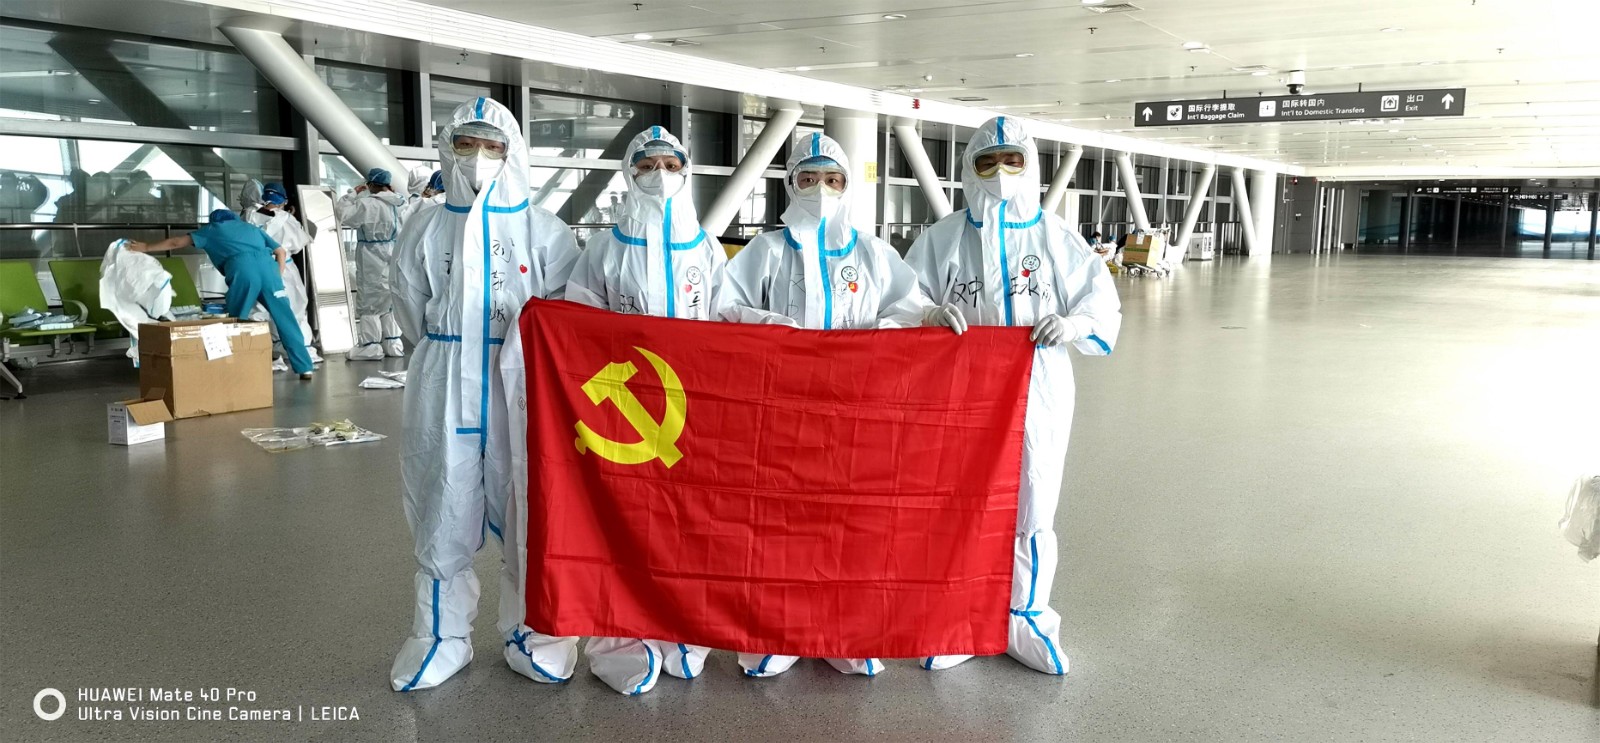 汉台区疾控中心派出第三批流调队员支援咸阳机场9